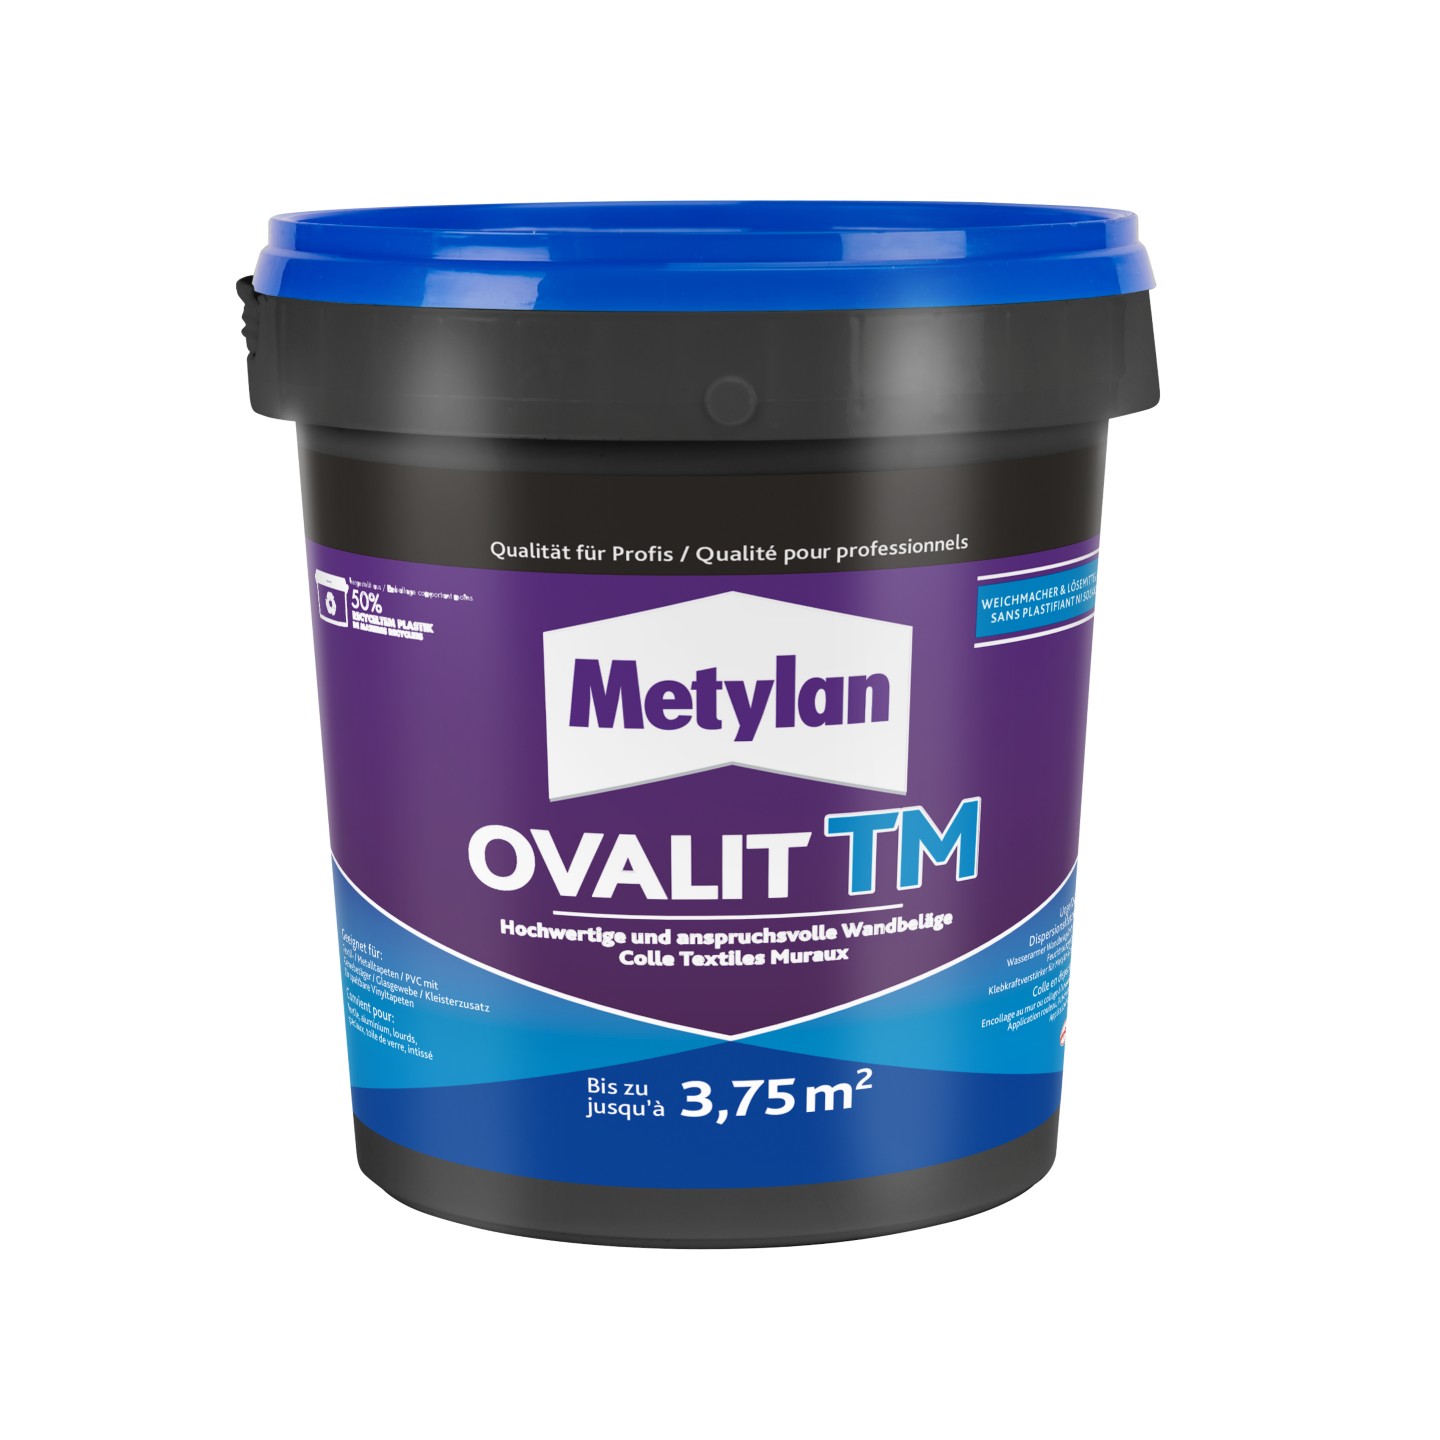 TM Ovalit Metylan